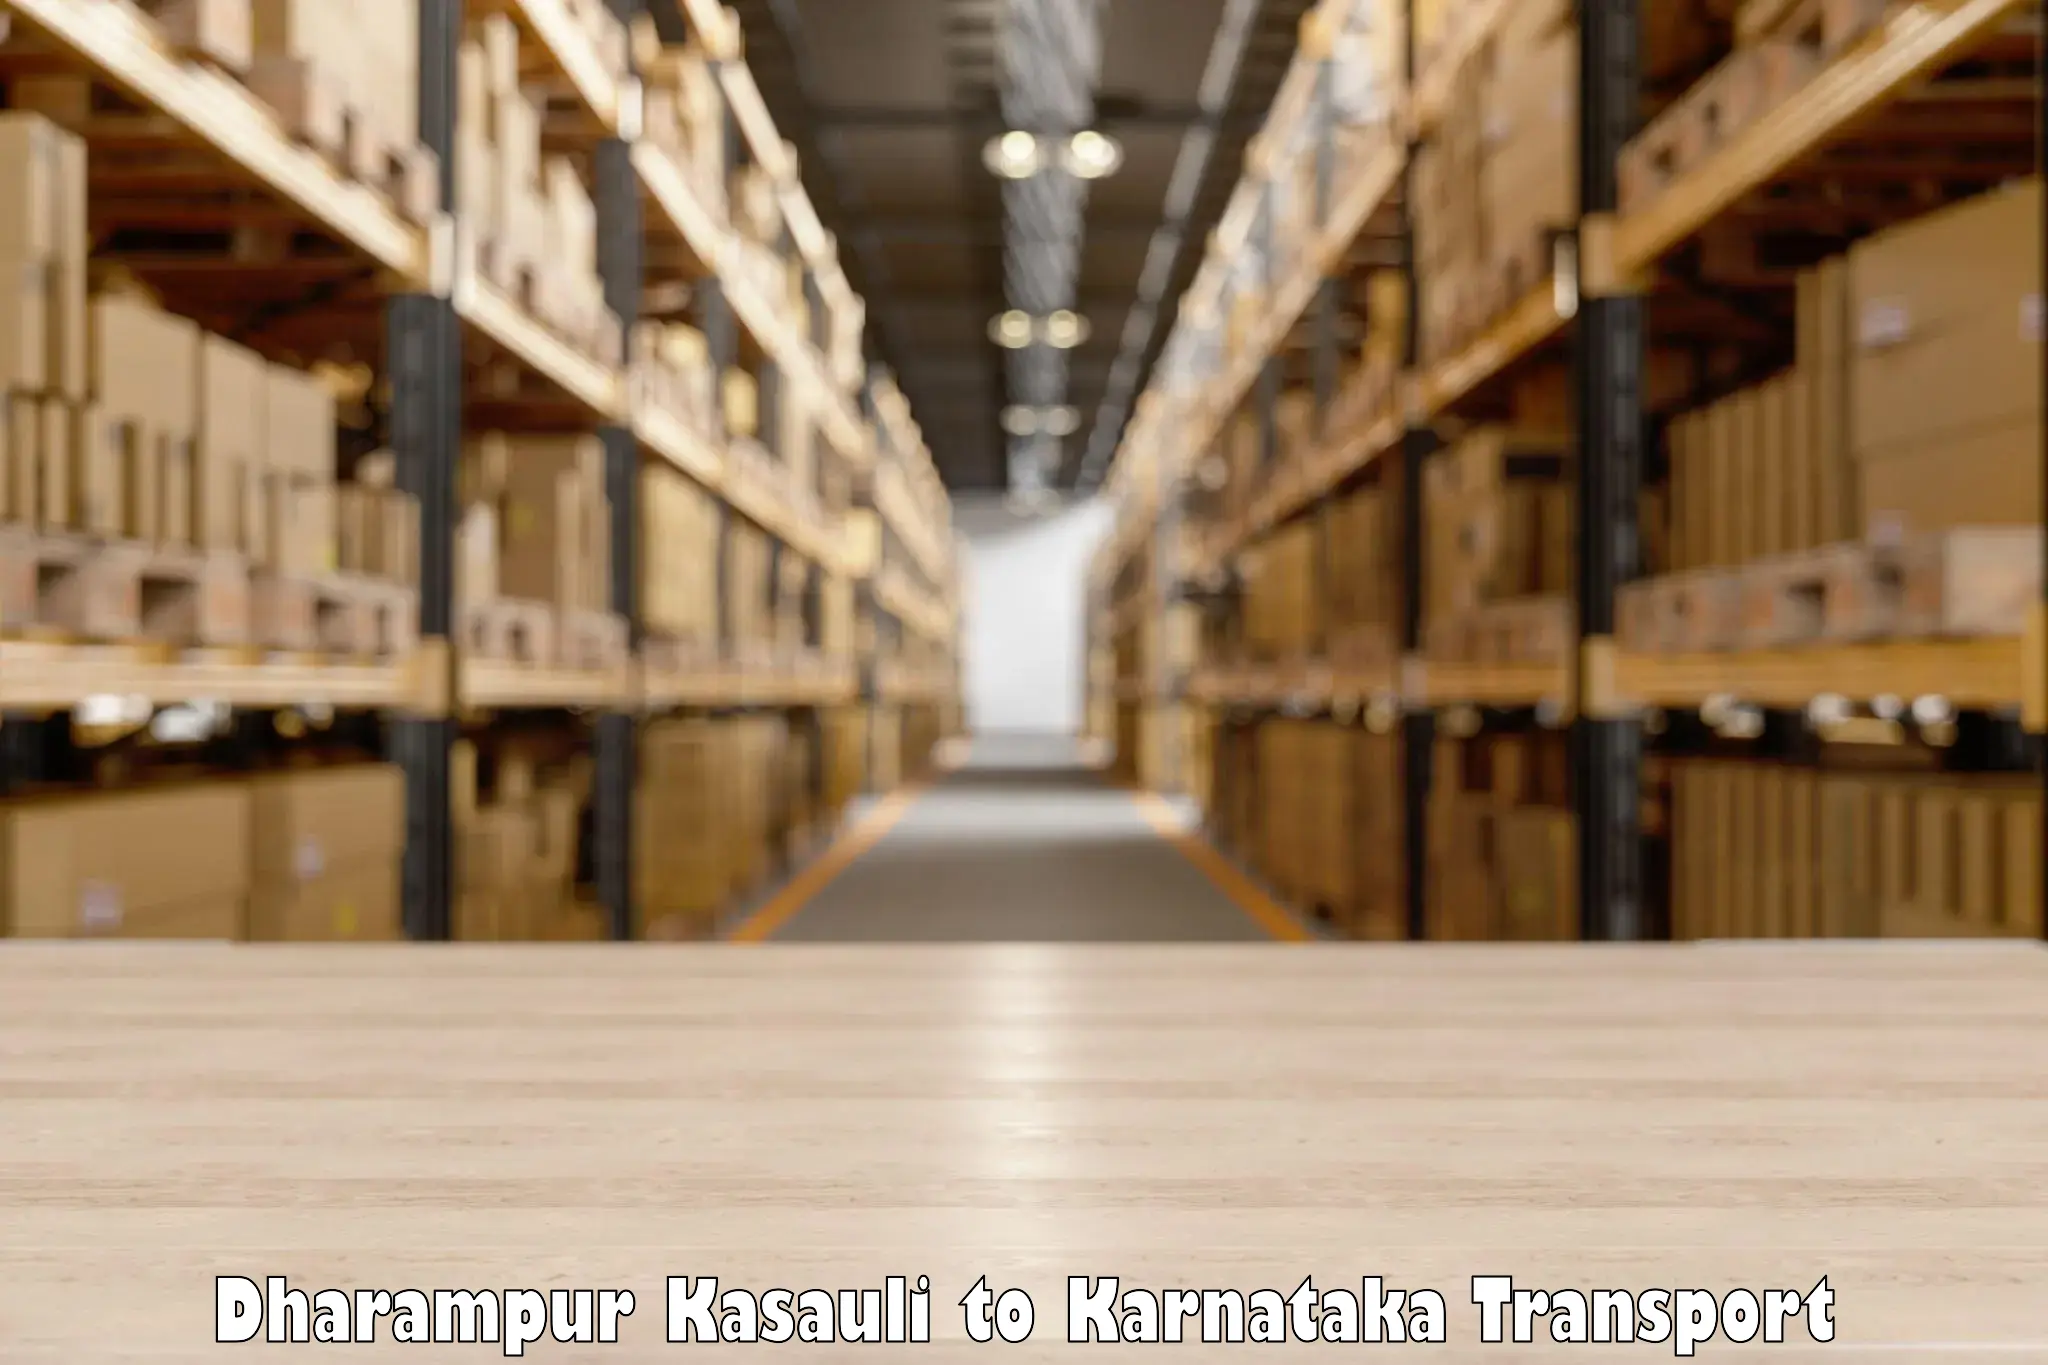 Lorry transport service Dharampur Kasauli to Hangal